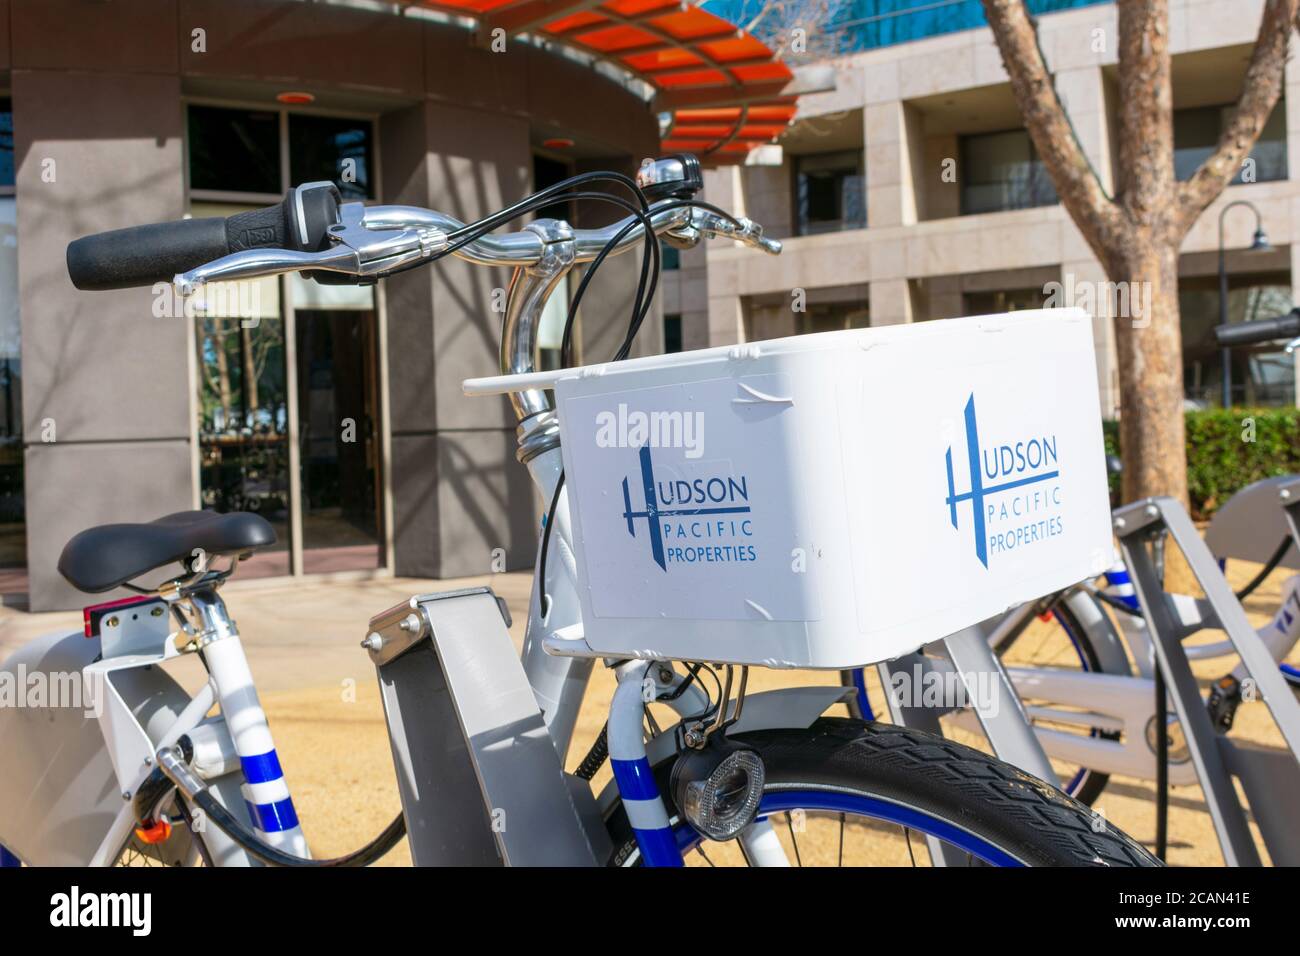 Le proprietà di Hudson Pacific firmano sulla bici a pedale condivisa con lo sfondo commerciale dello spazio dell'ufficio - San Jose, California, USA - 2020 Foto Stock